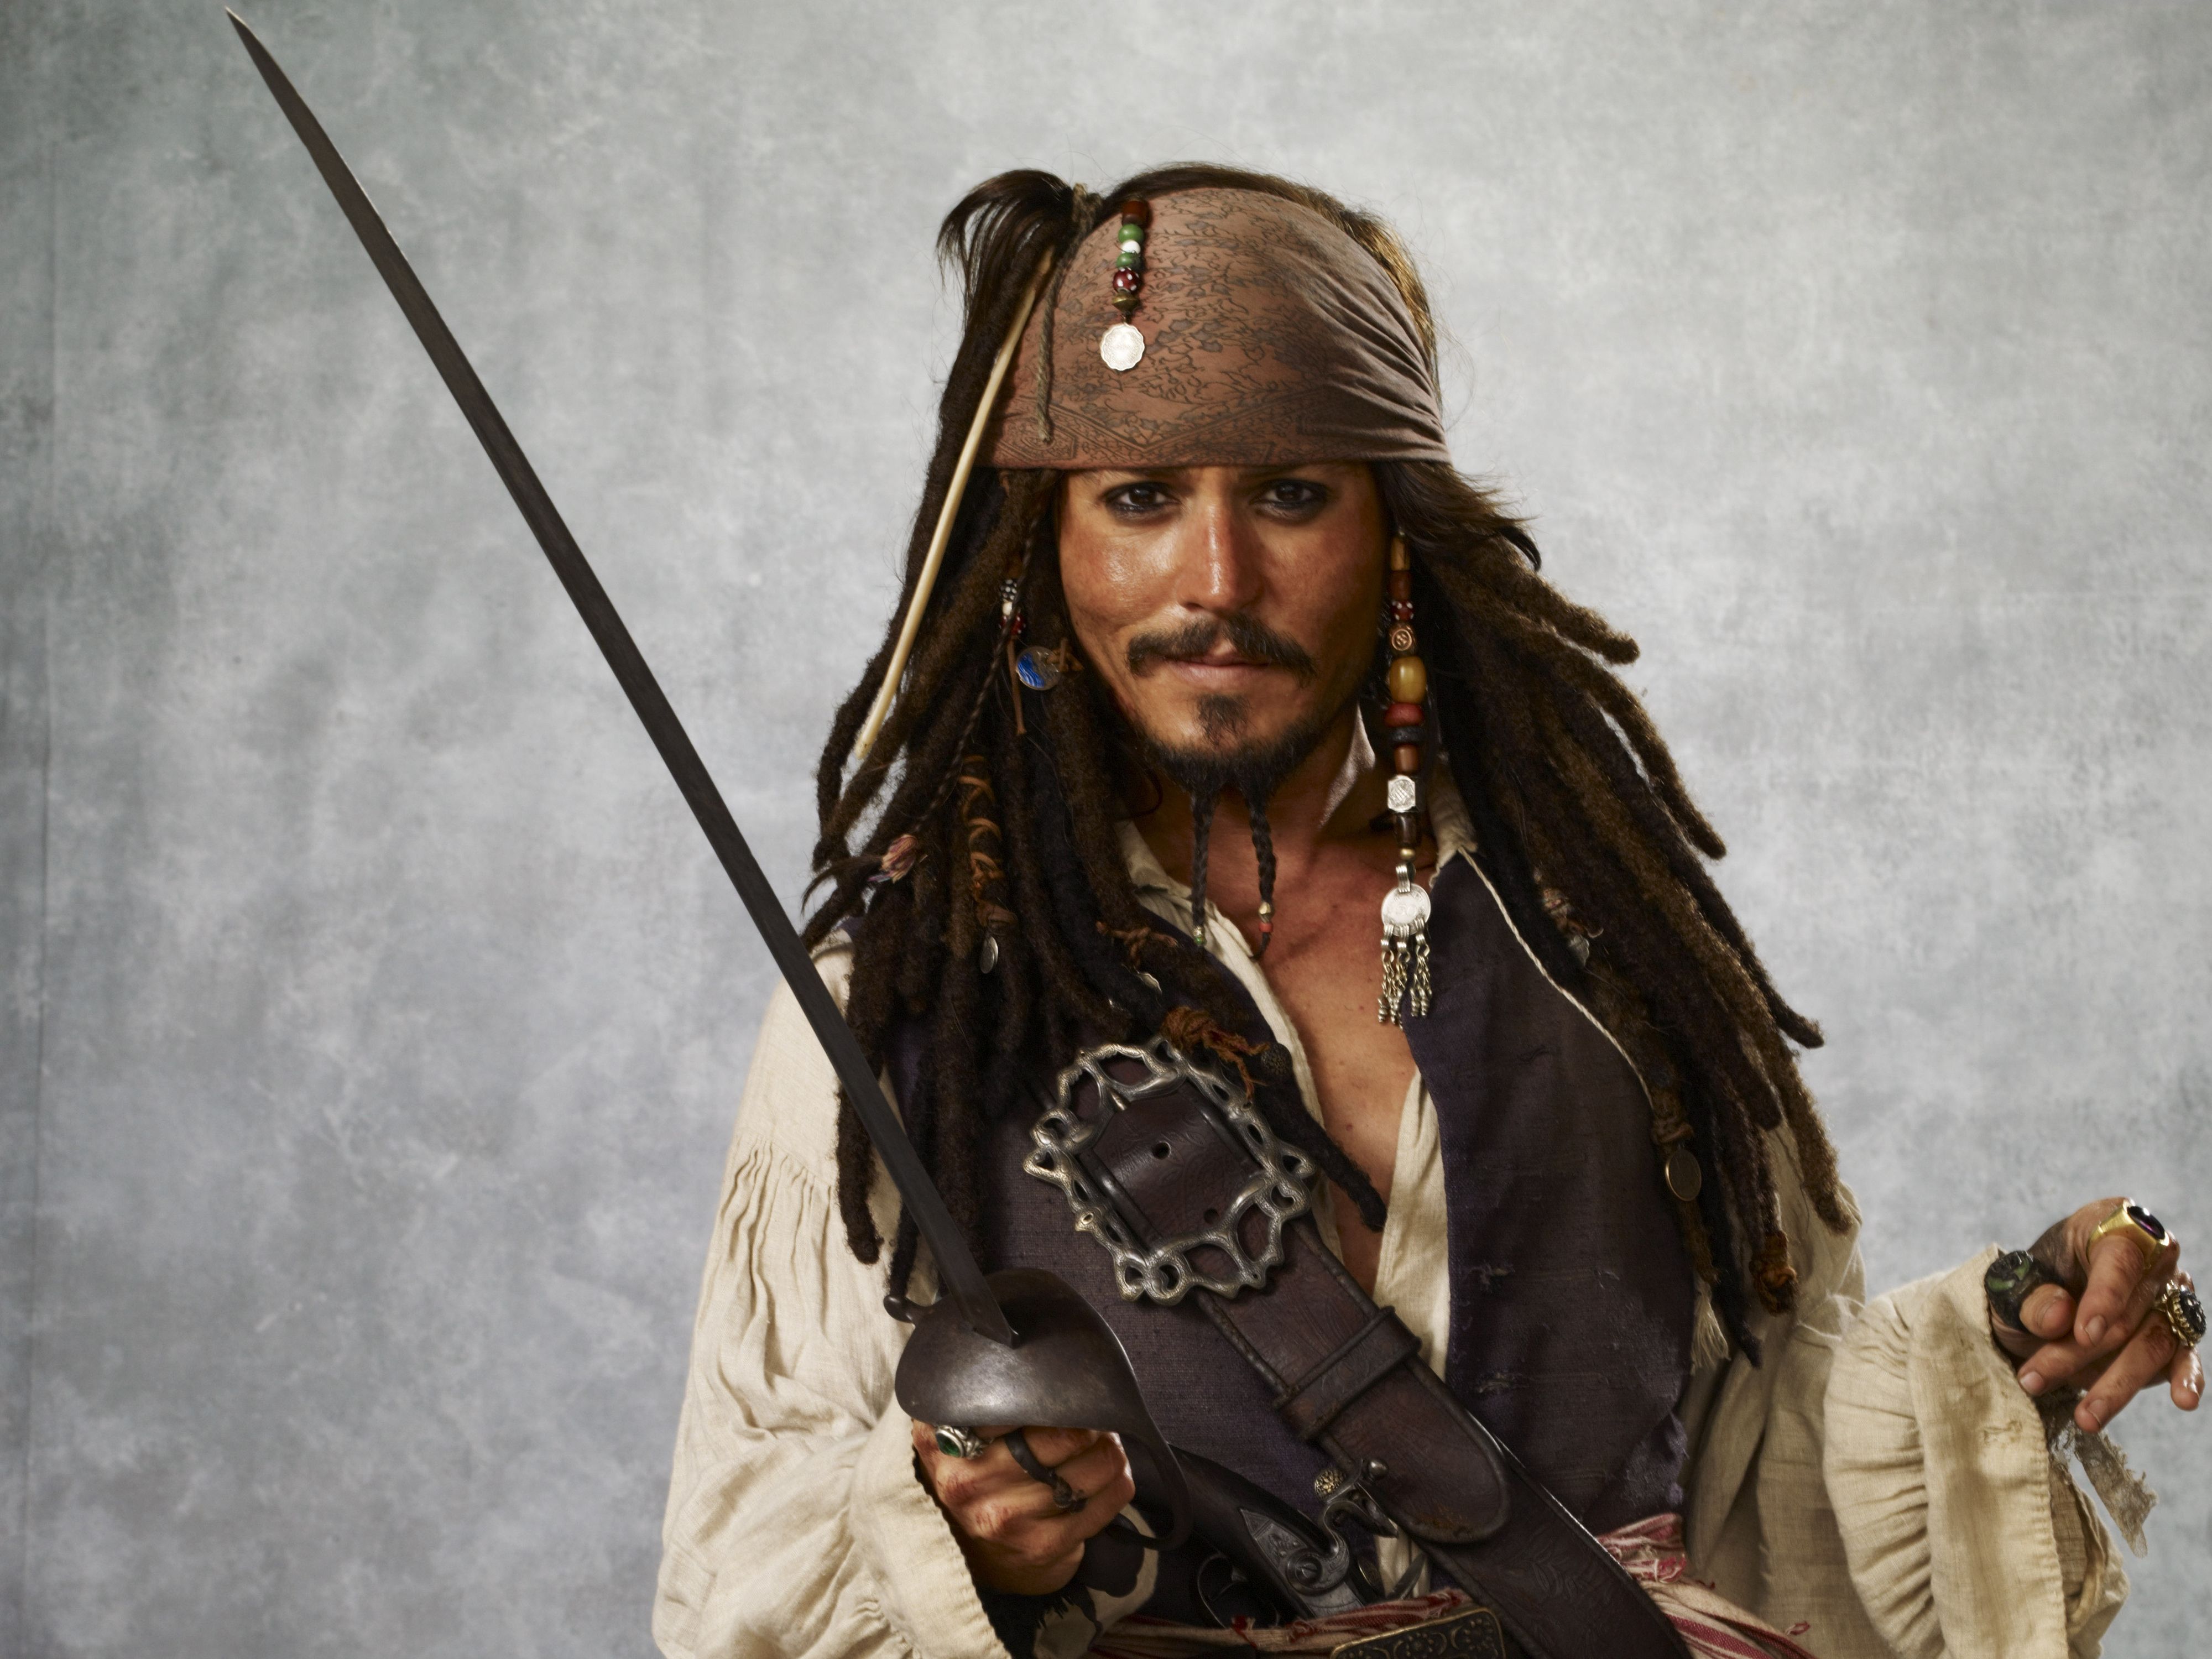 Captain Jack Sparrow 4k Wallpapers 4k Hd Captain Jack Sparrow 4k Backgrounds On Wallpaperbat 1391